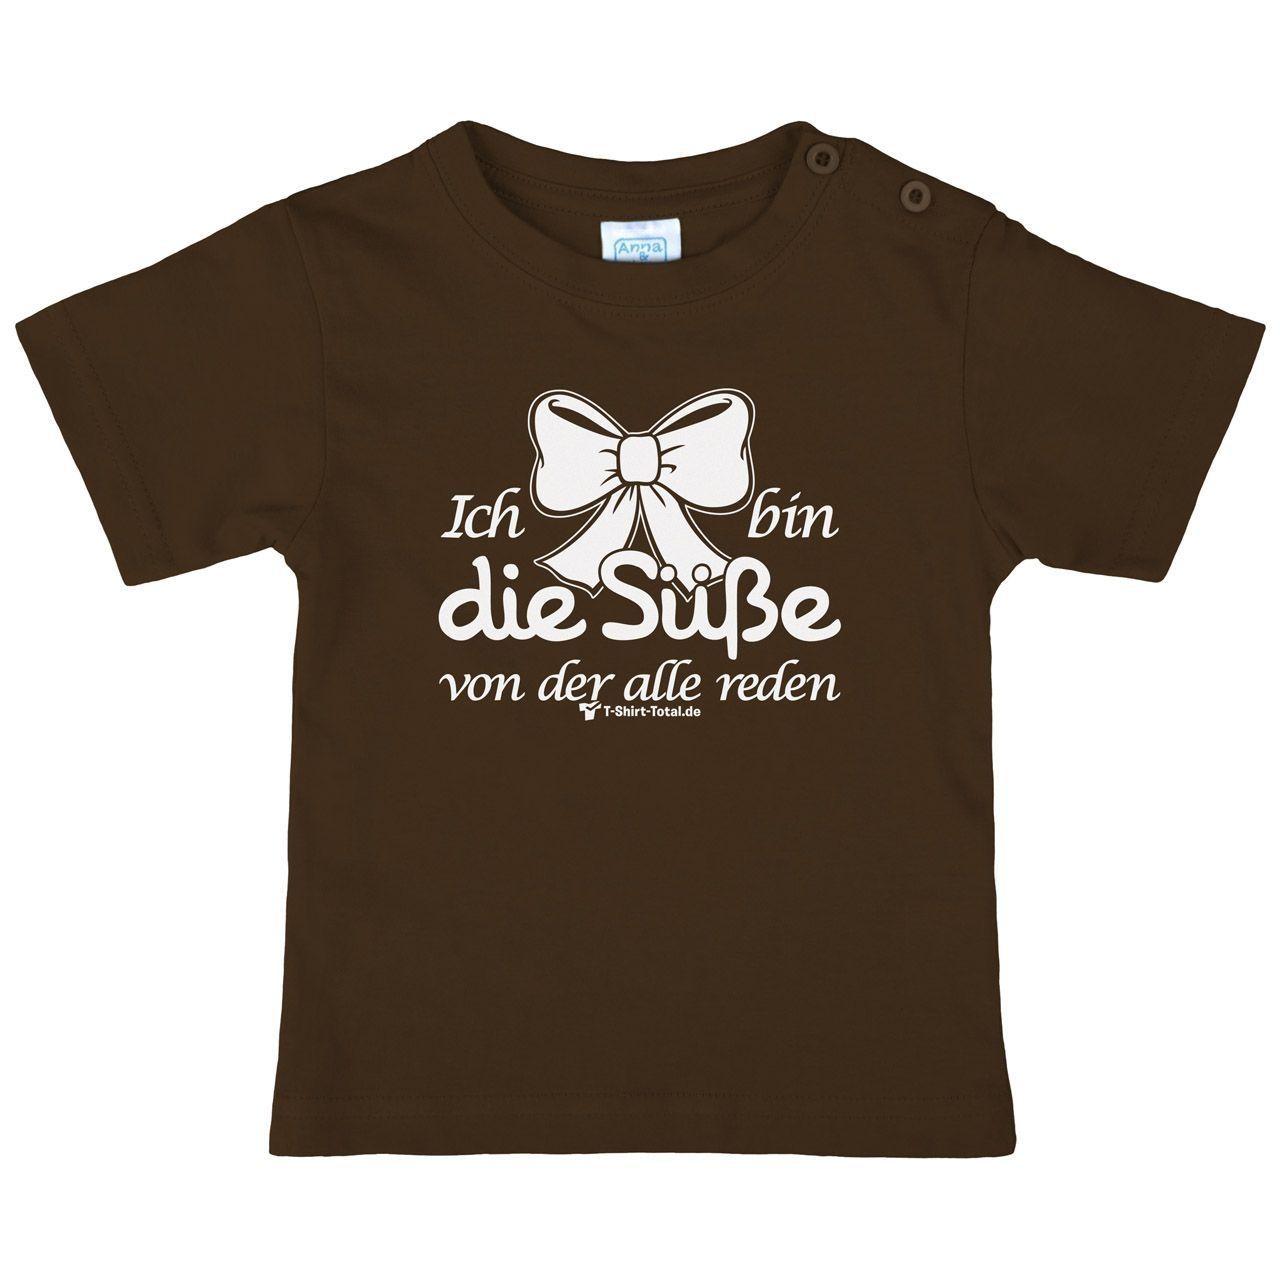 Die Süße Kinder T-Shirt braun 80 / 86